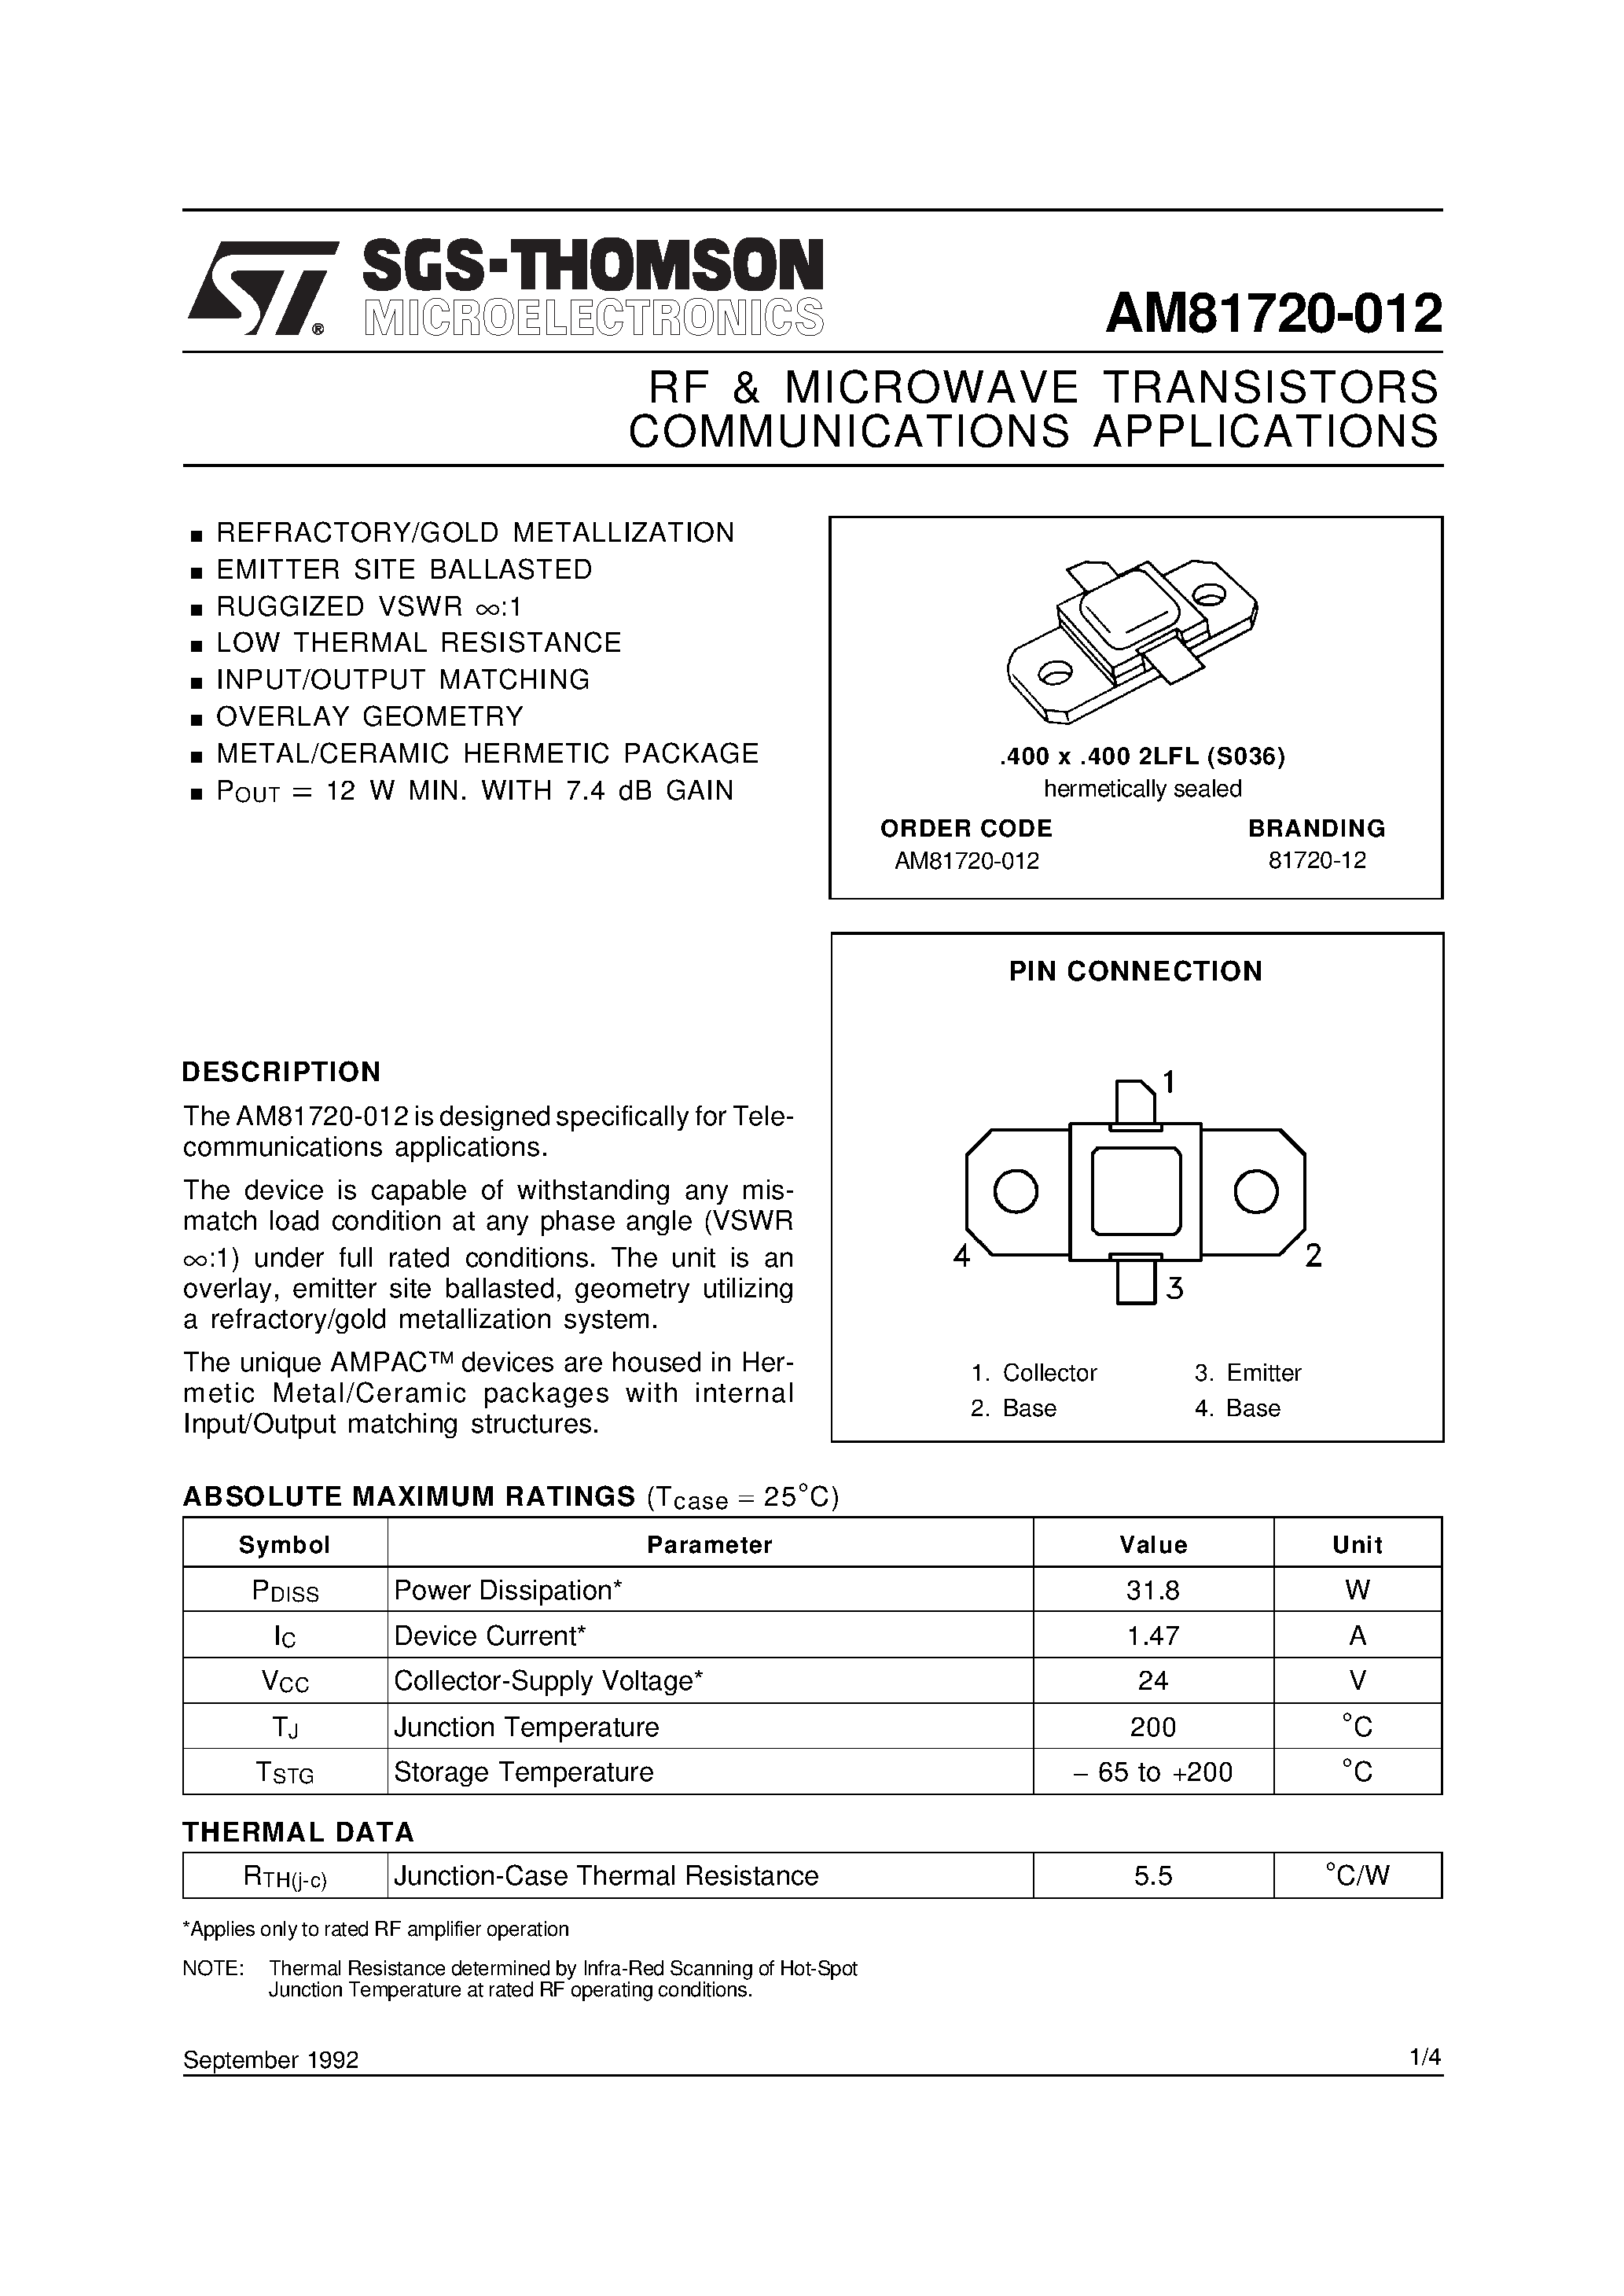 Даташит AM81720-012 - COMMUNICATIONS APPLICATIONS RF & MICROWAVE TRANSISTORS страница 1